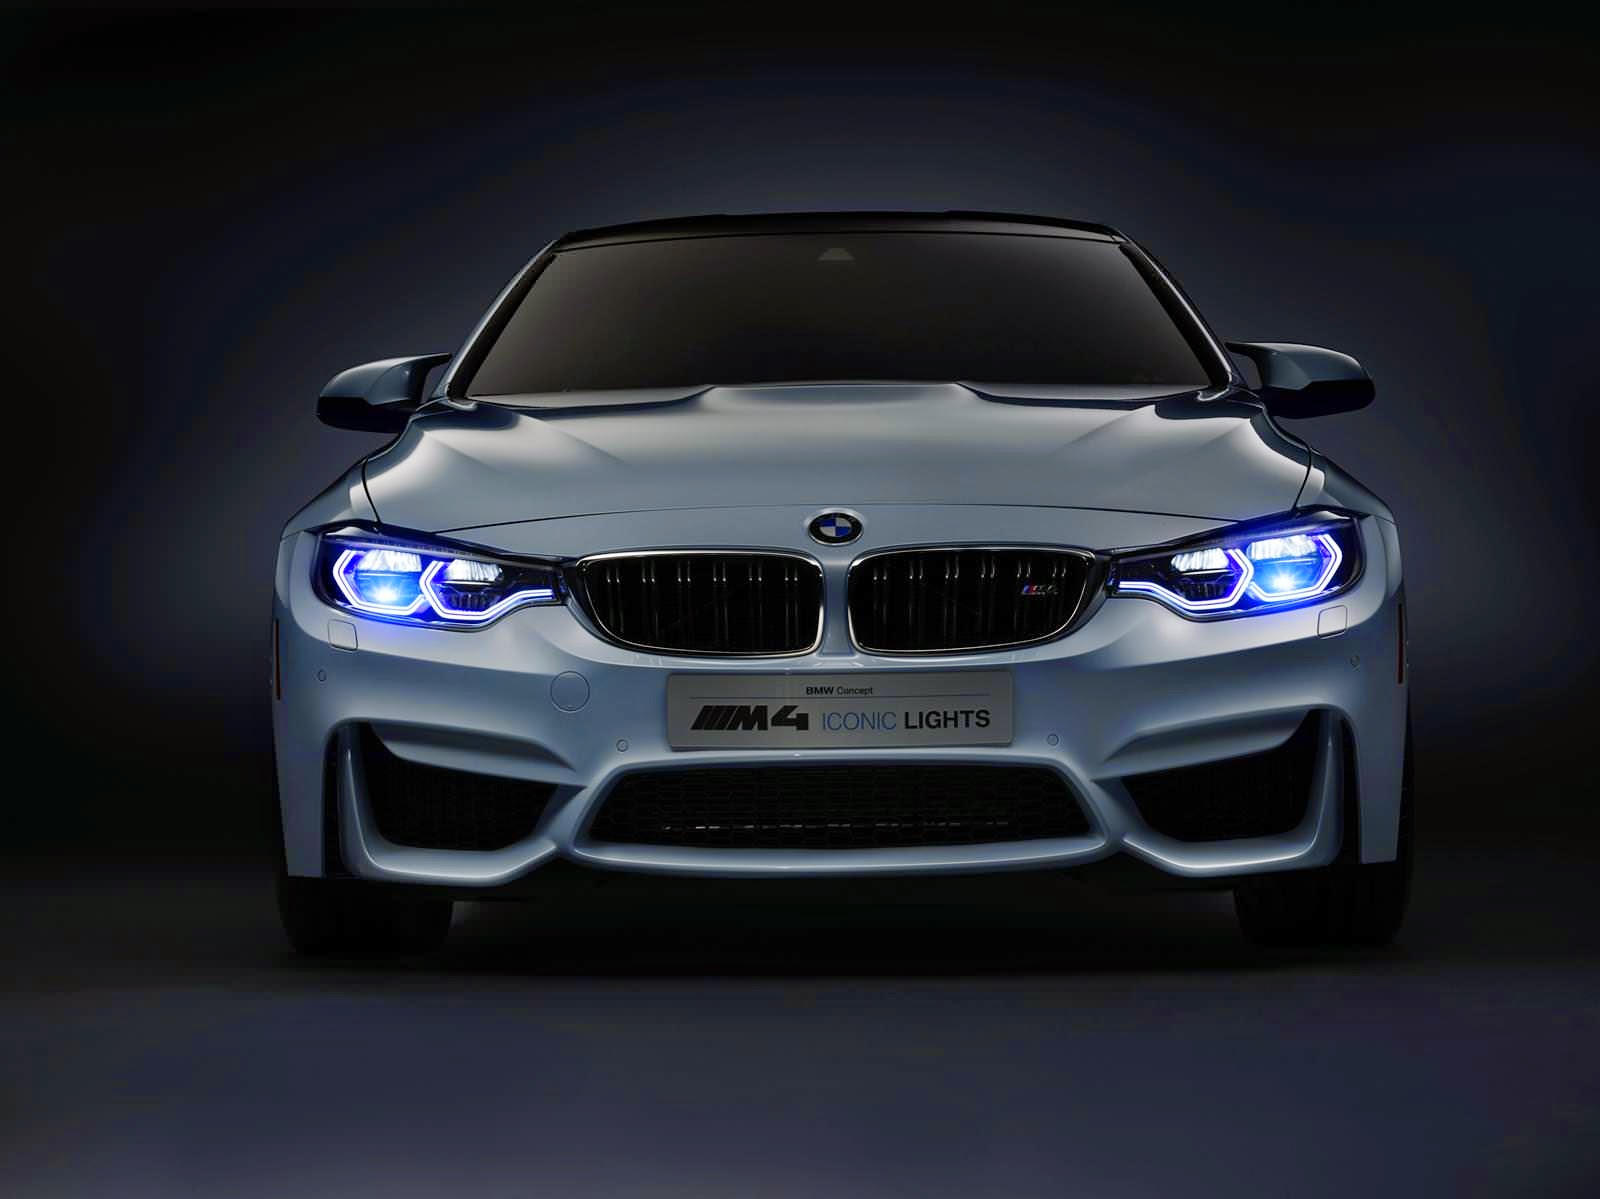 BMW M4 Concept Iconic Lights صور سيارات: سيارة بي ام دبليو ام 4 كونسبت ايكونيك لايتس 2015 بمعرض 'CES' 